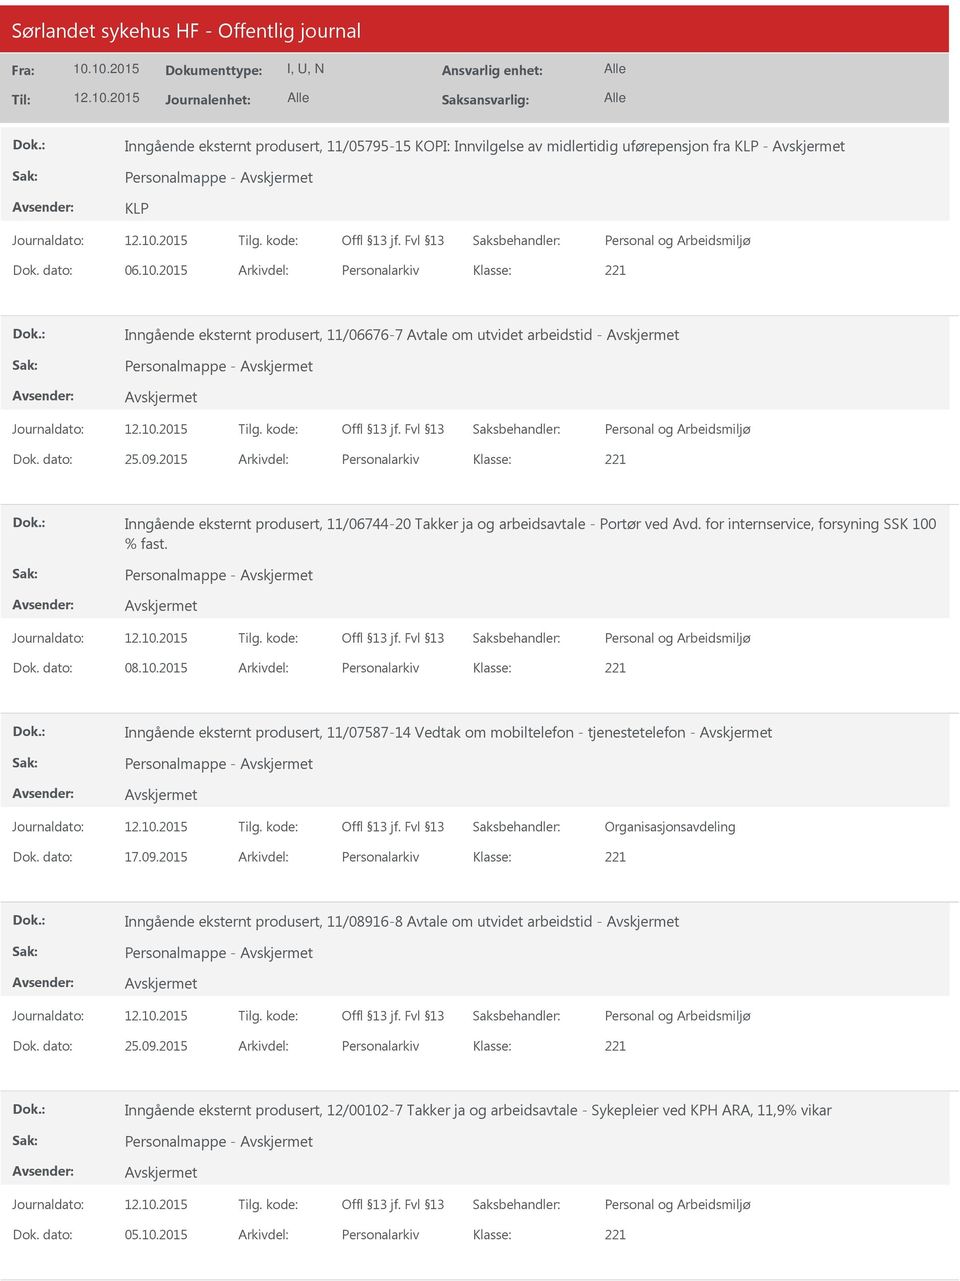 2015 Arkivdel: Personalarkiv Inngående eksternt produsert, 11/06744-20 Takker ja og arbeidsavtale - Portør ved Avd. for internservice, forsyning SSK 100